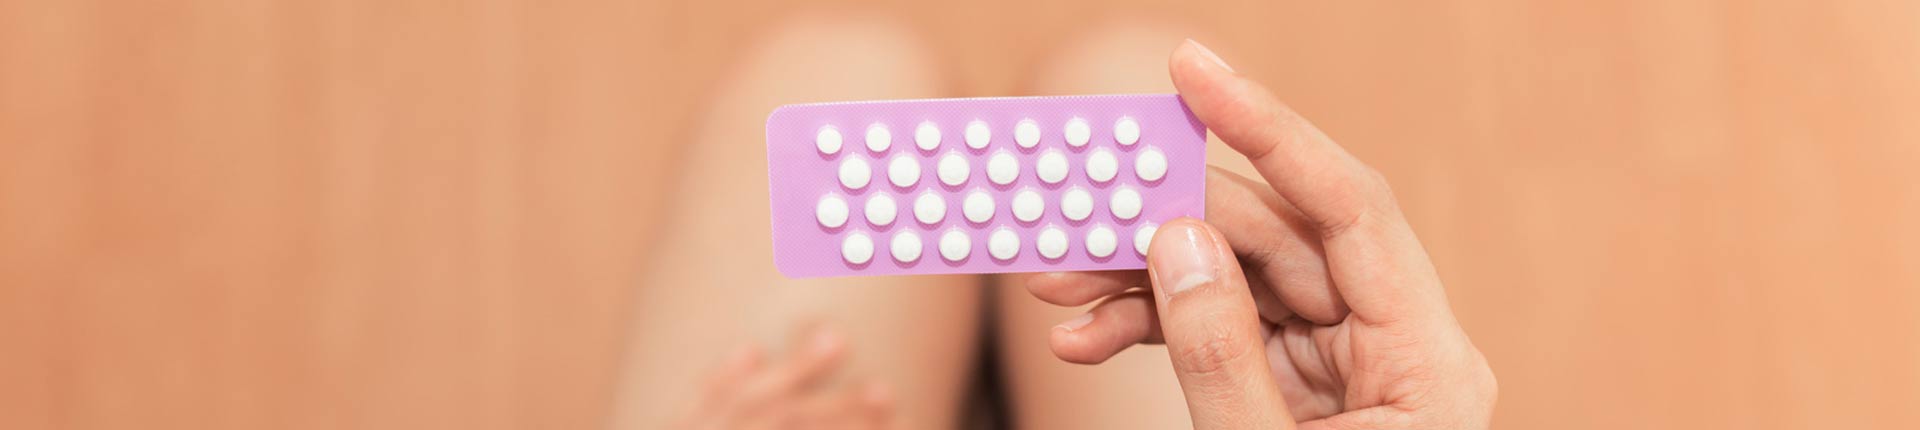 Antykoncepcja hormonalna - wyniki sportowe, waga i zdrowie